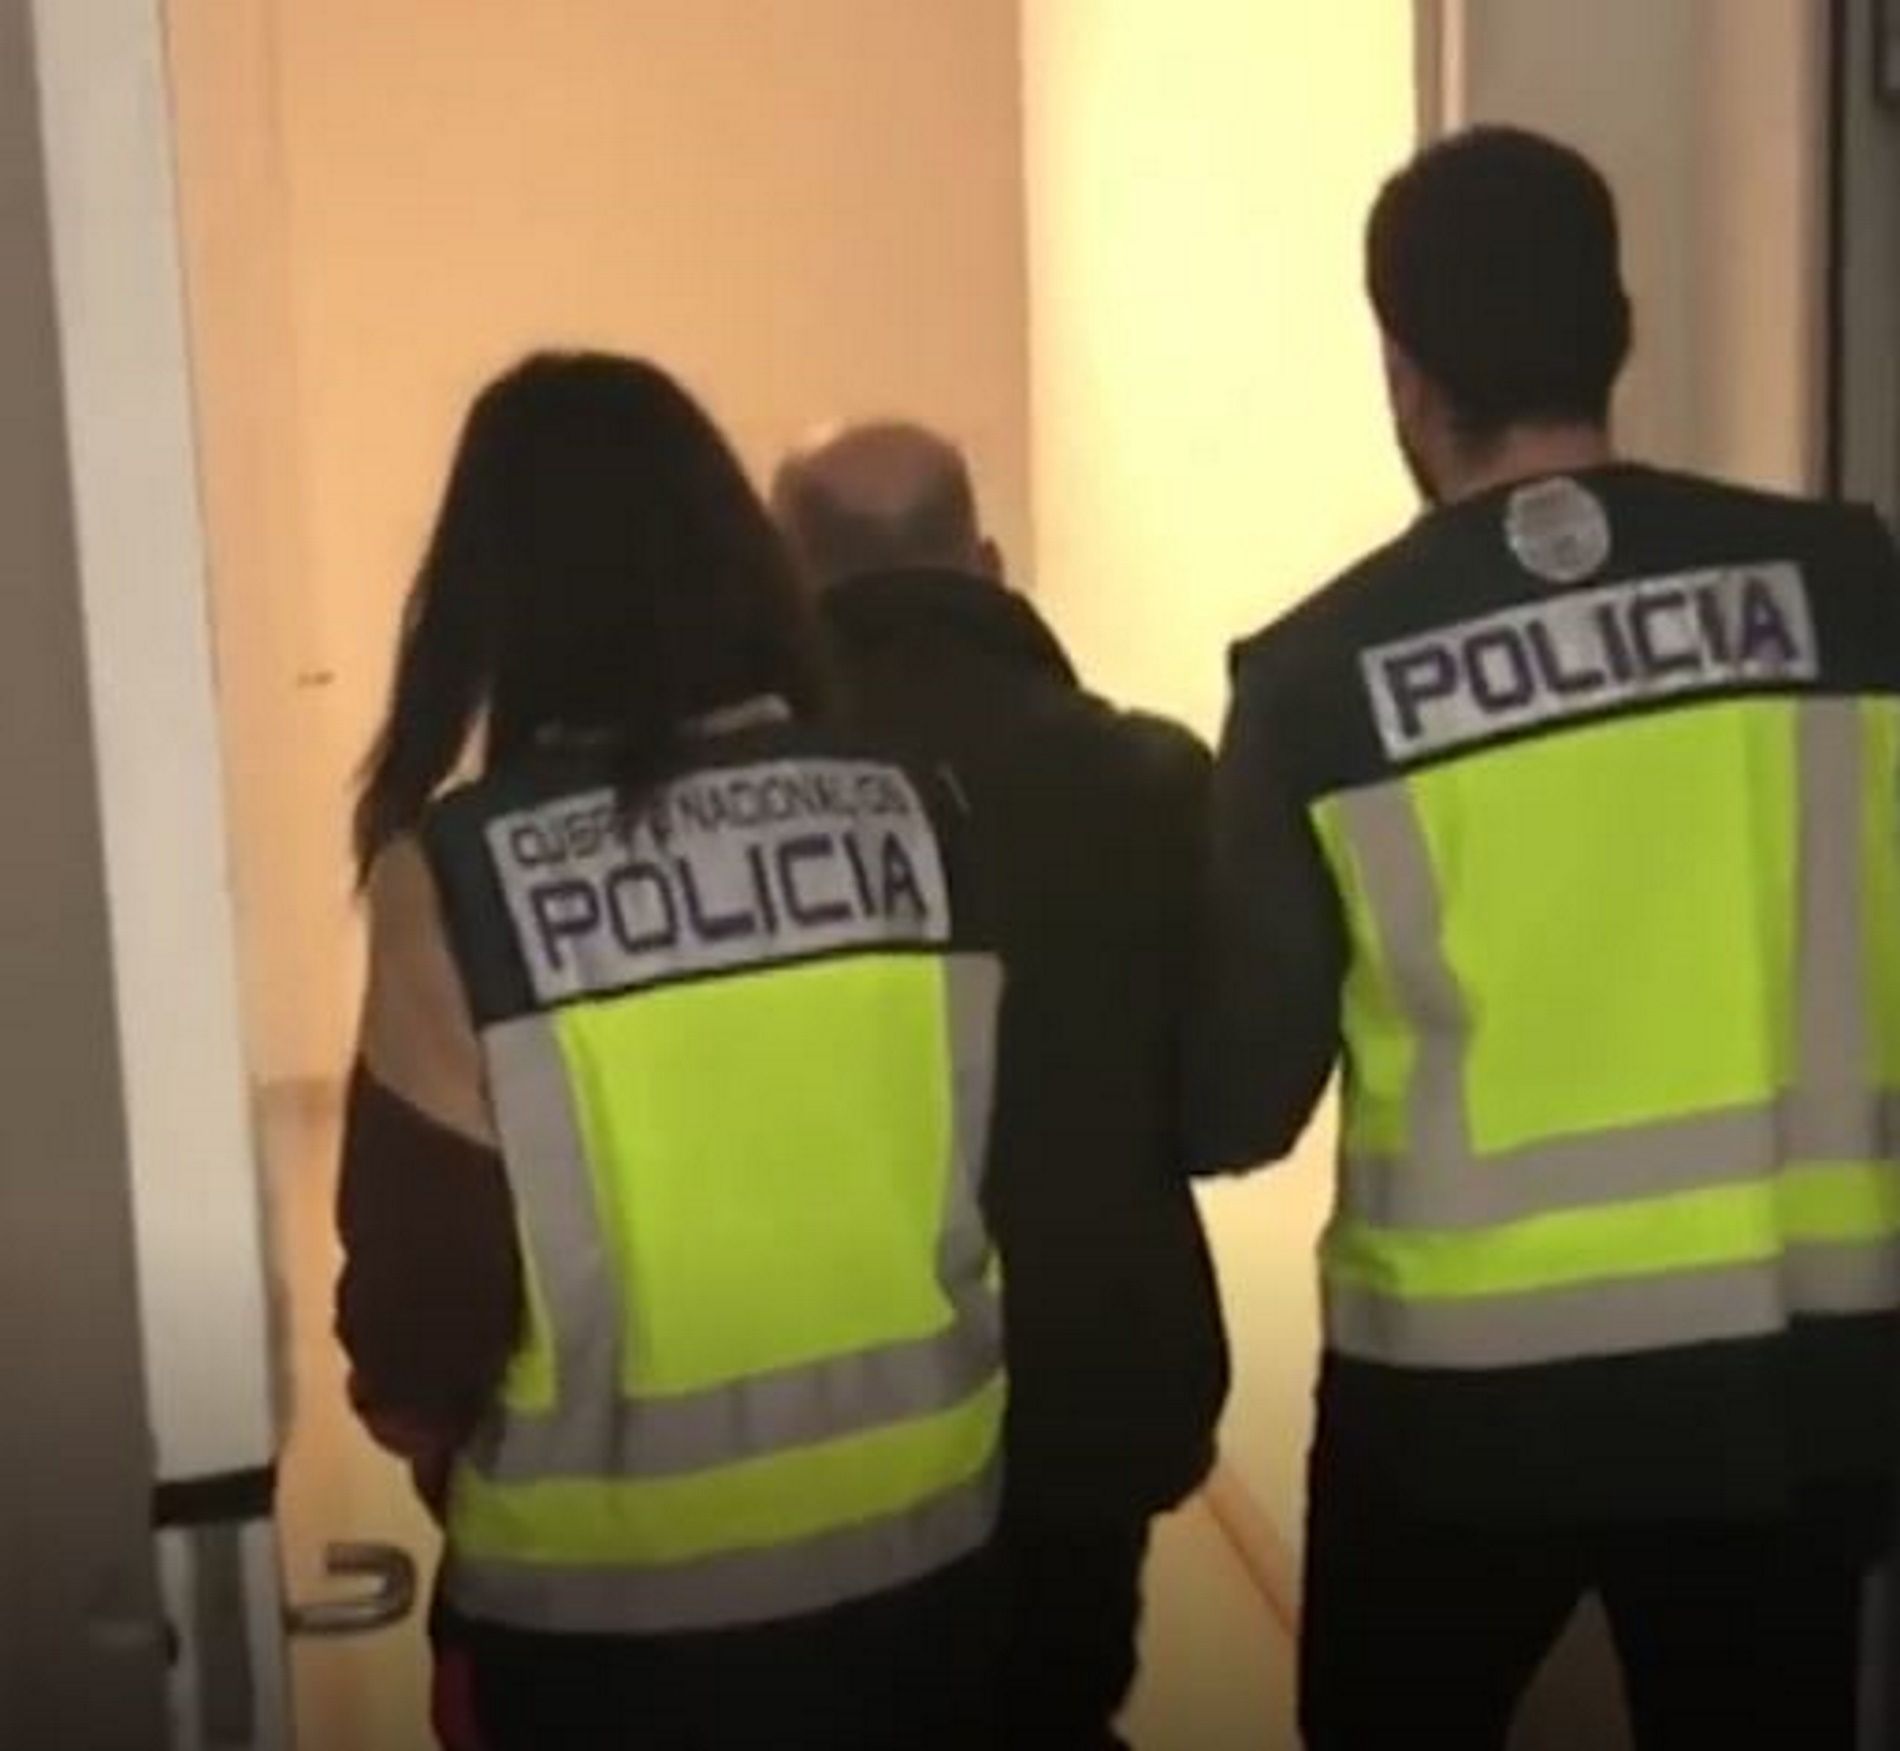 Captura de pantalla de la detención / Policía Nacional